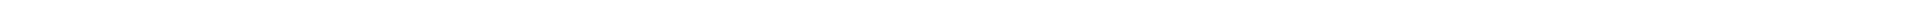 Лечение десен - цены в Астане (Нур-Султан), Алматы, Атырау, Усть-Каменогорск, Уральск, Кокшетау в Казахстане, фото 8